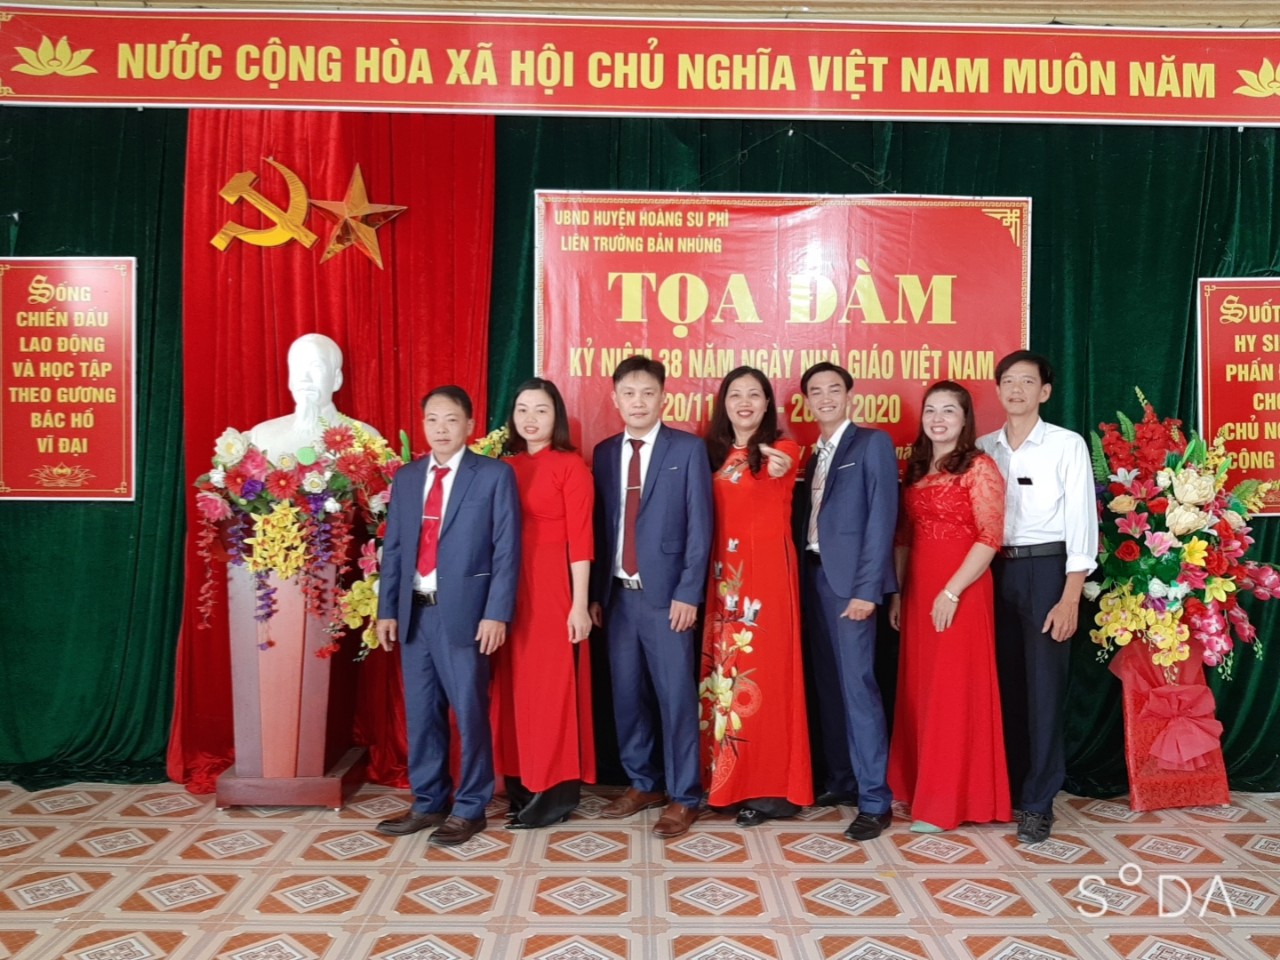 Liên trường Mầm non, trường PTDTBT Tiểu học; trường THCS xã bản Nhùng tổ chức tọa đàm kỷ niệm ngày nhà giáo Việt nam 20/11.